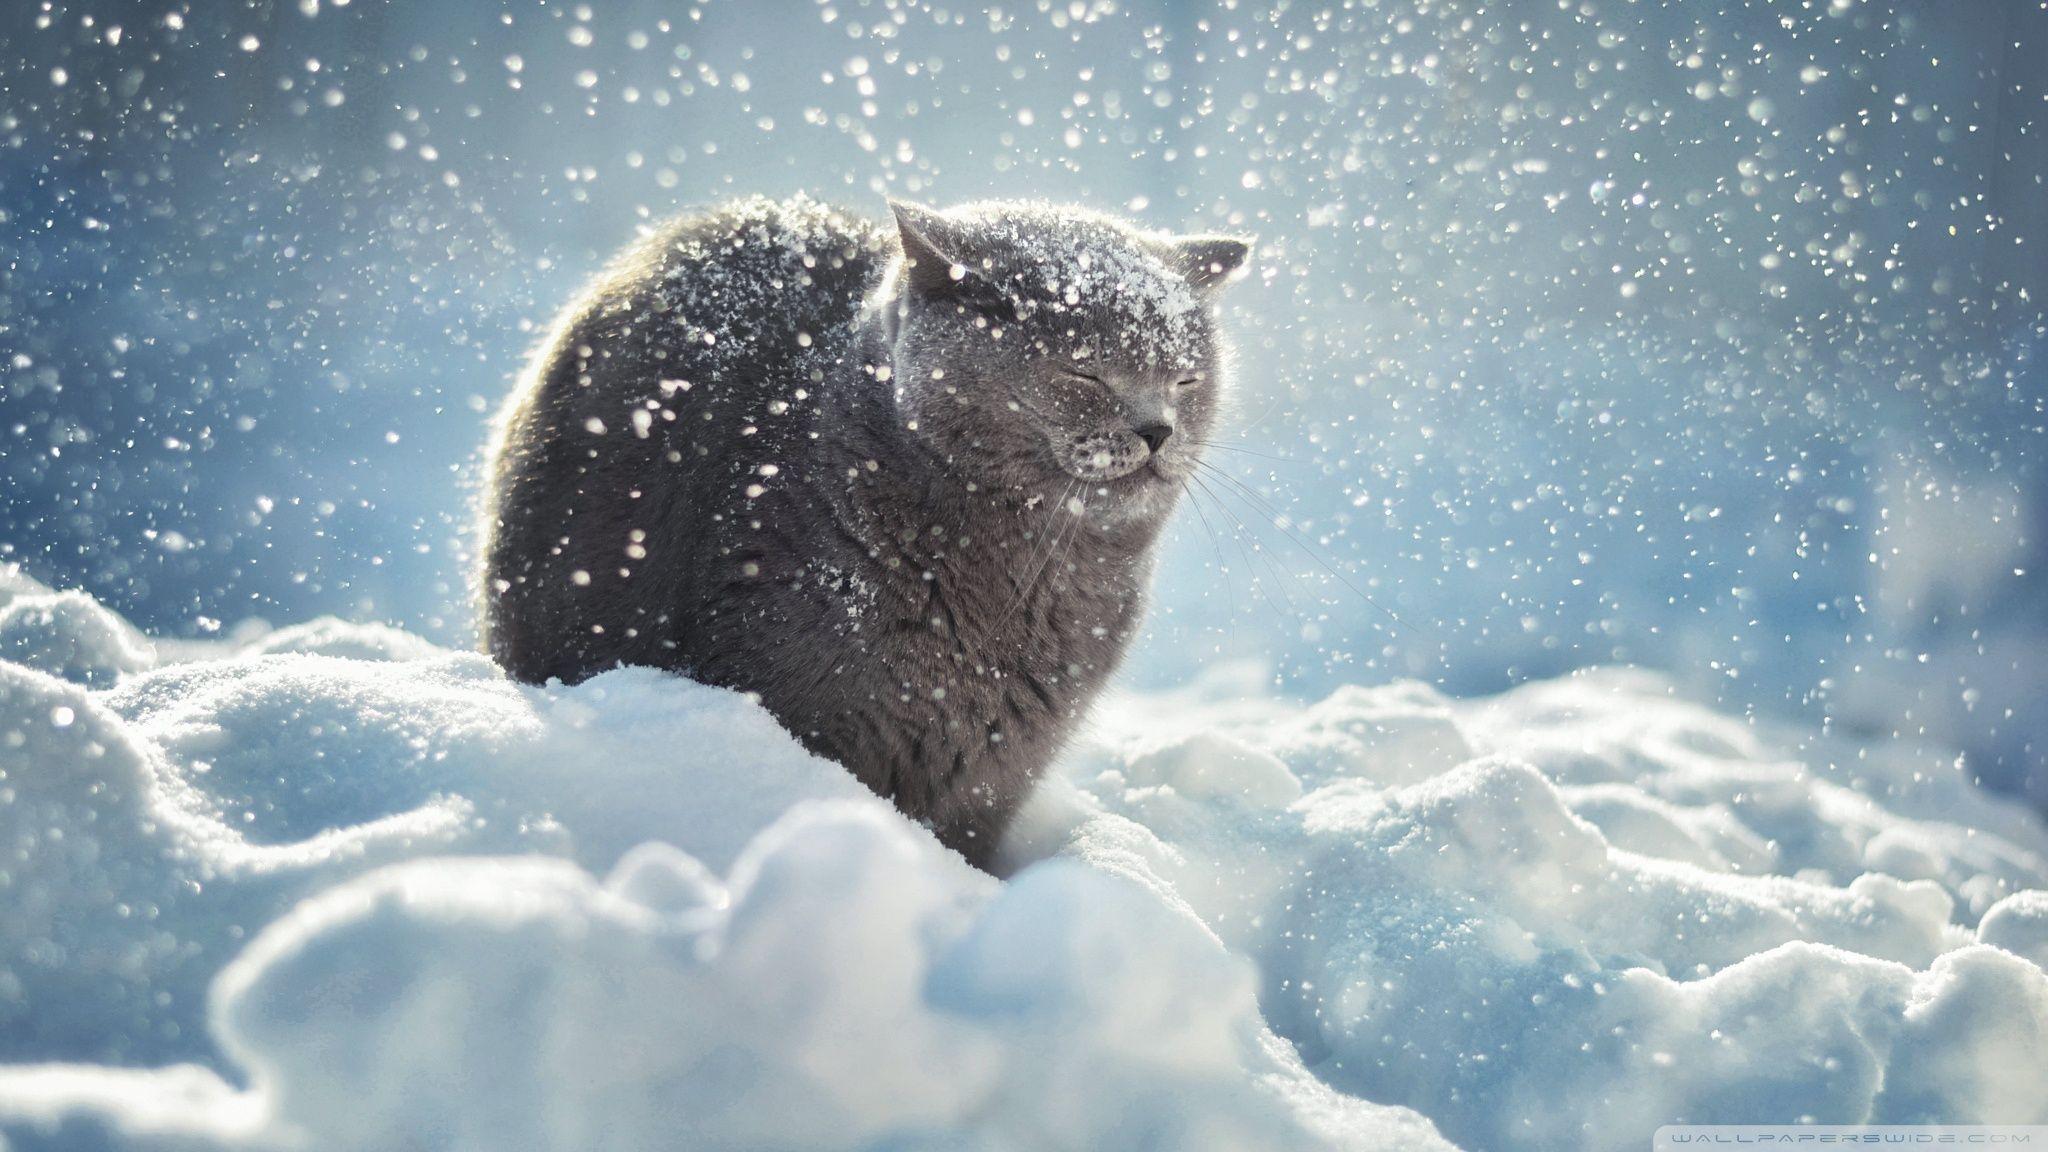 Winter Cat Wallpapers: Chào mừng đông về cùng mèo với những bức ảnh nền về mèo đáng yêu trong trang phục giáng sinh. Hãy đón chào mùa đông tuyệt vời với hình ảnh cực kì ấm áp và dễ thương này.